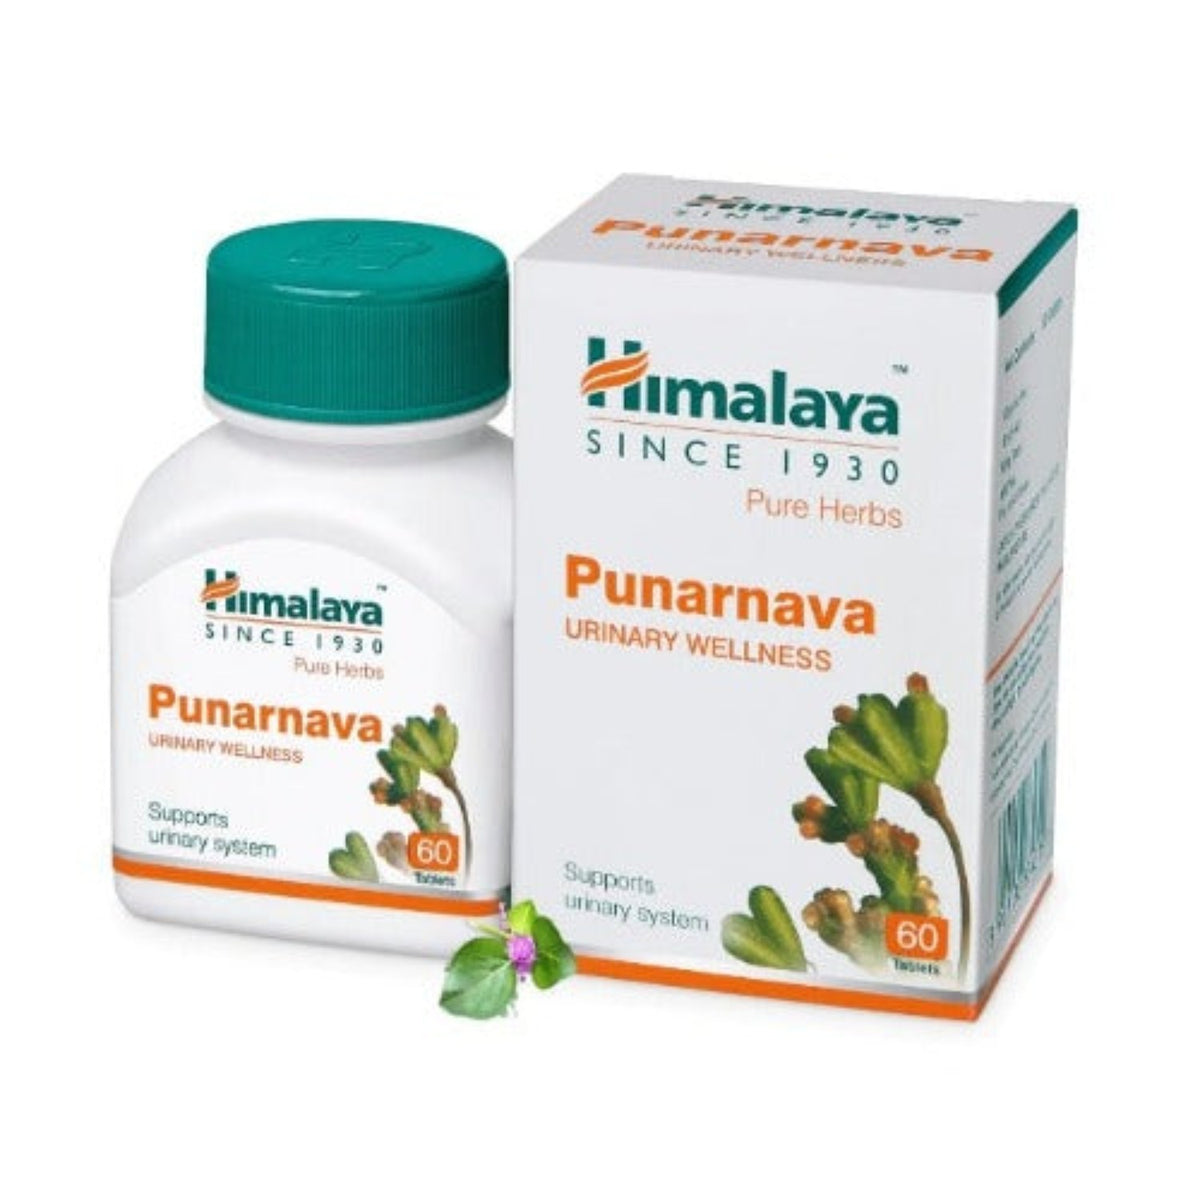 Himalaya Pure Herbs Urinary Wellness Herbal Ayurvedic Punarnava Das, was den Körper verjüngt oder erneuert, 60 Tabletten